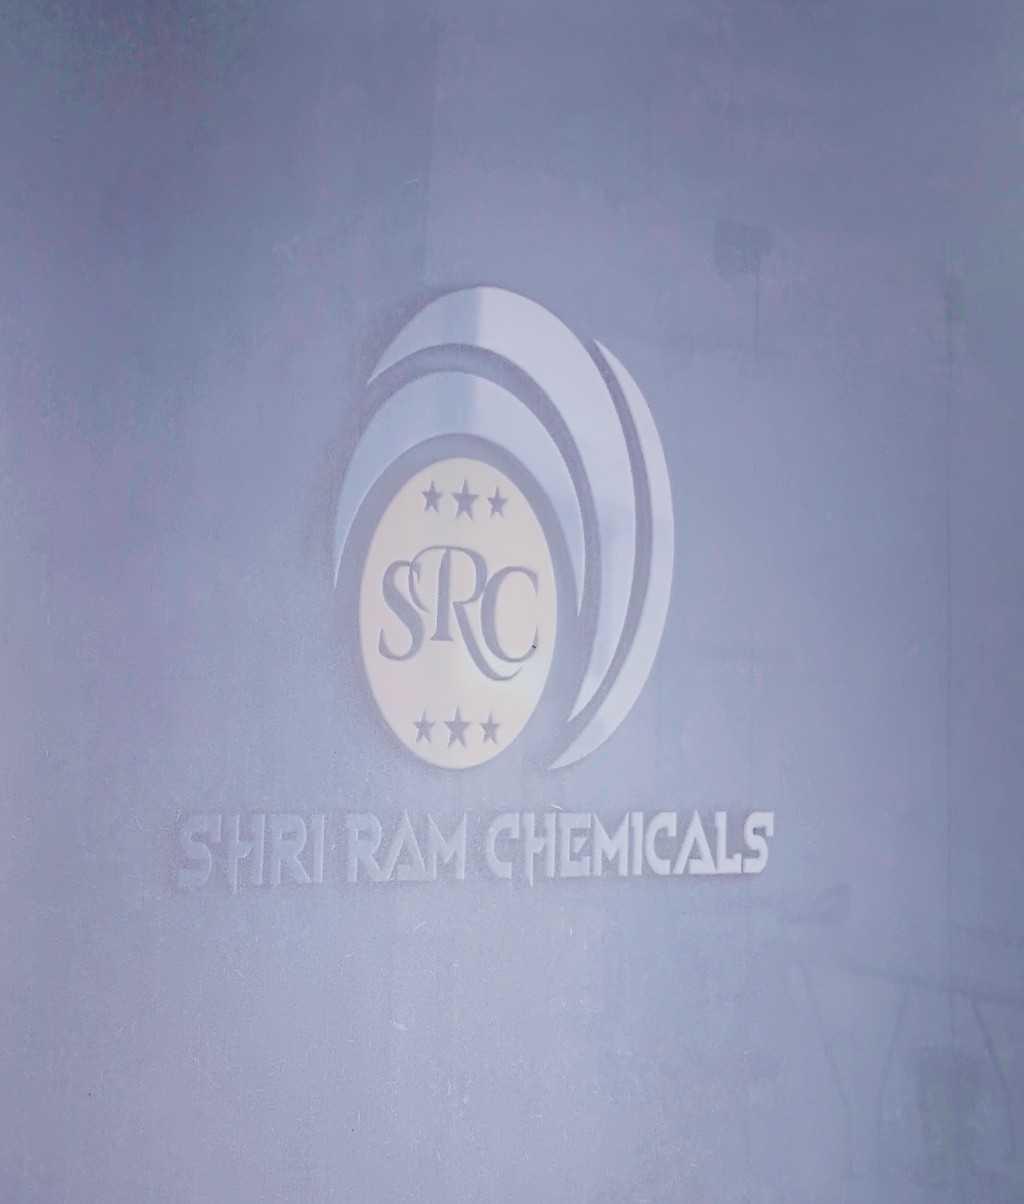 SHRI RAM CHEMICALS